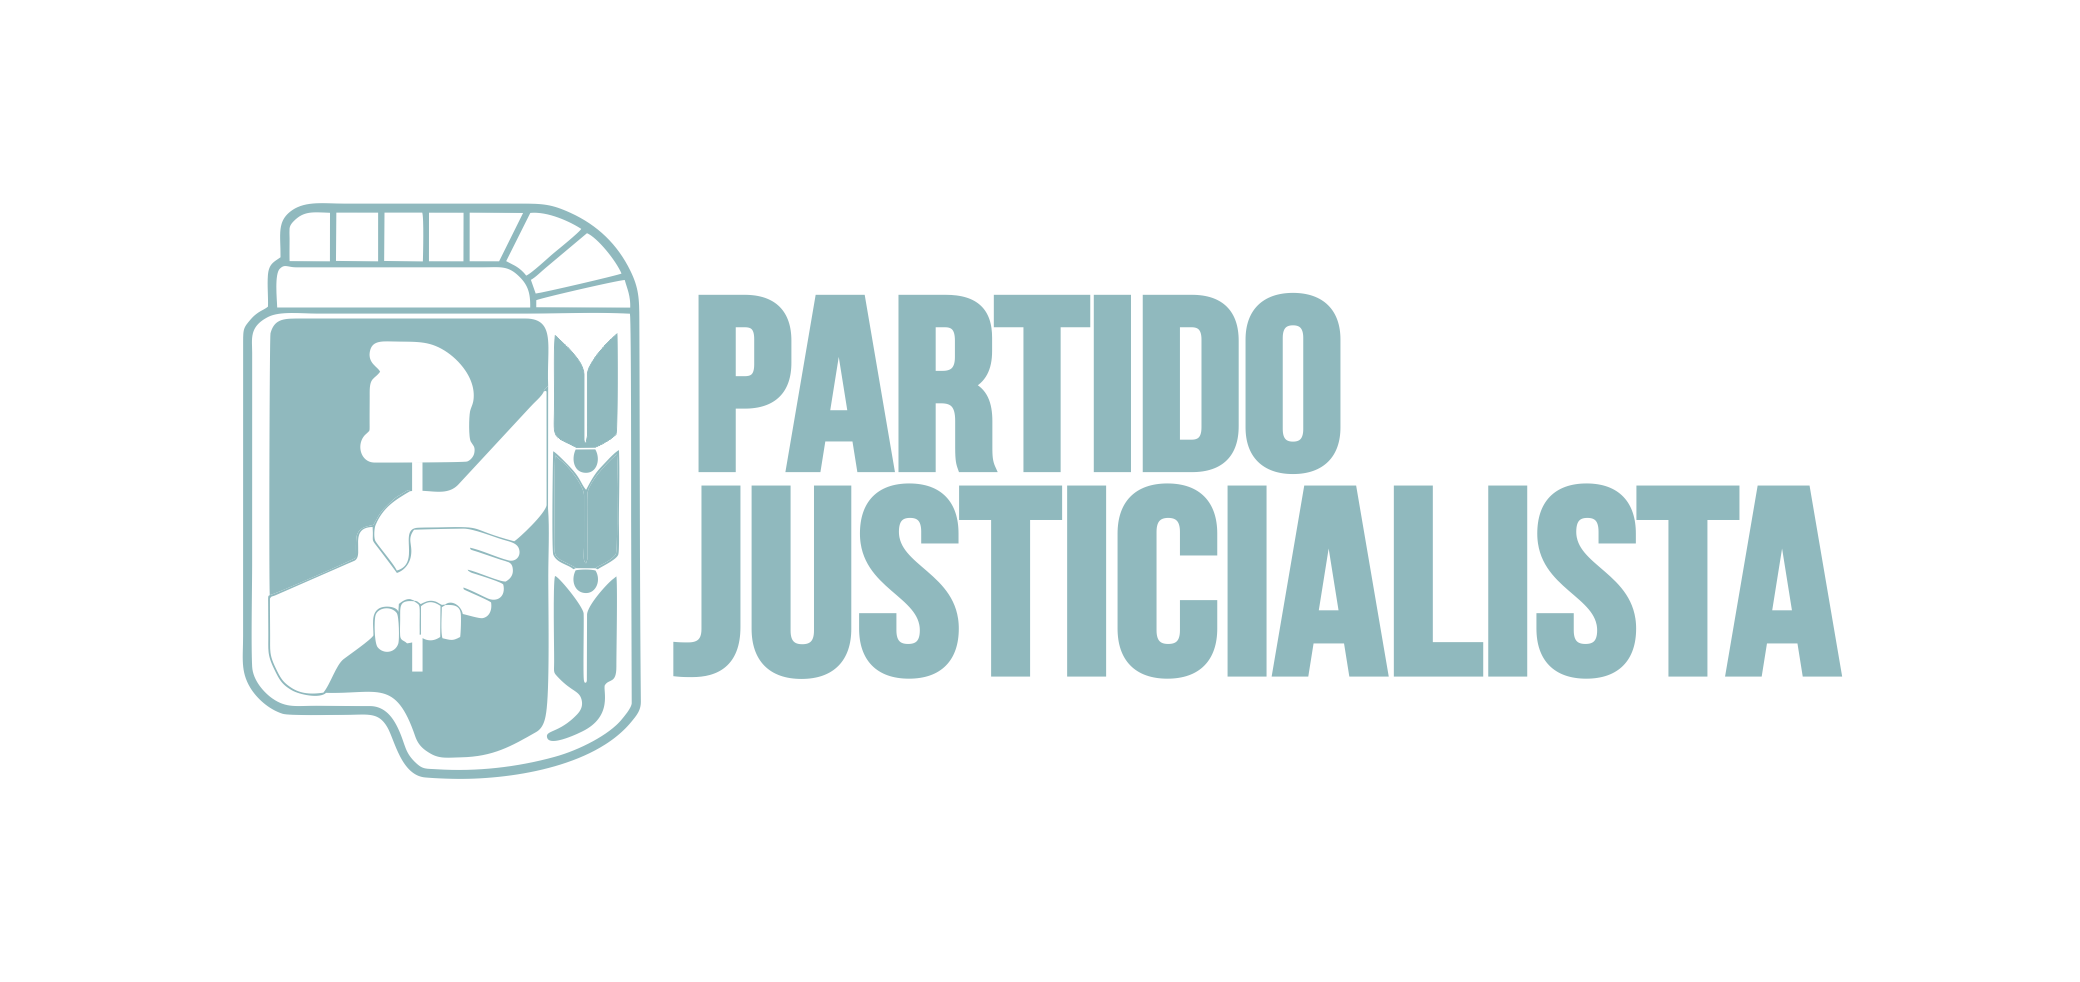 PARTIDO JUSTICIALISTA